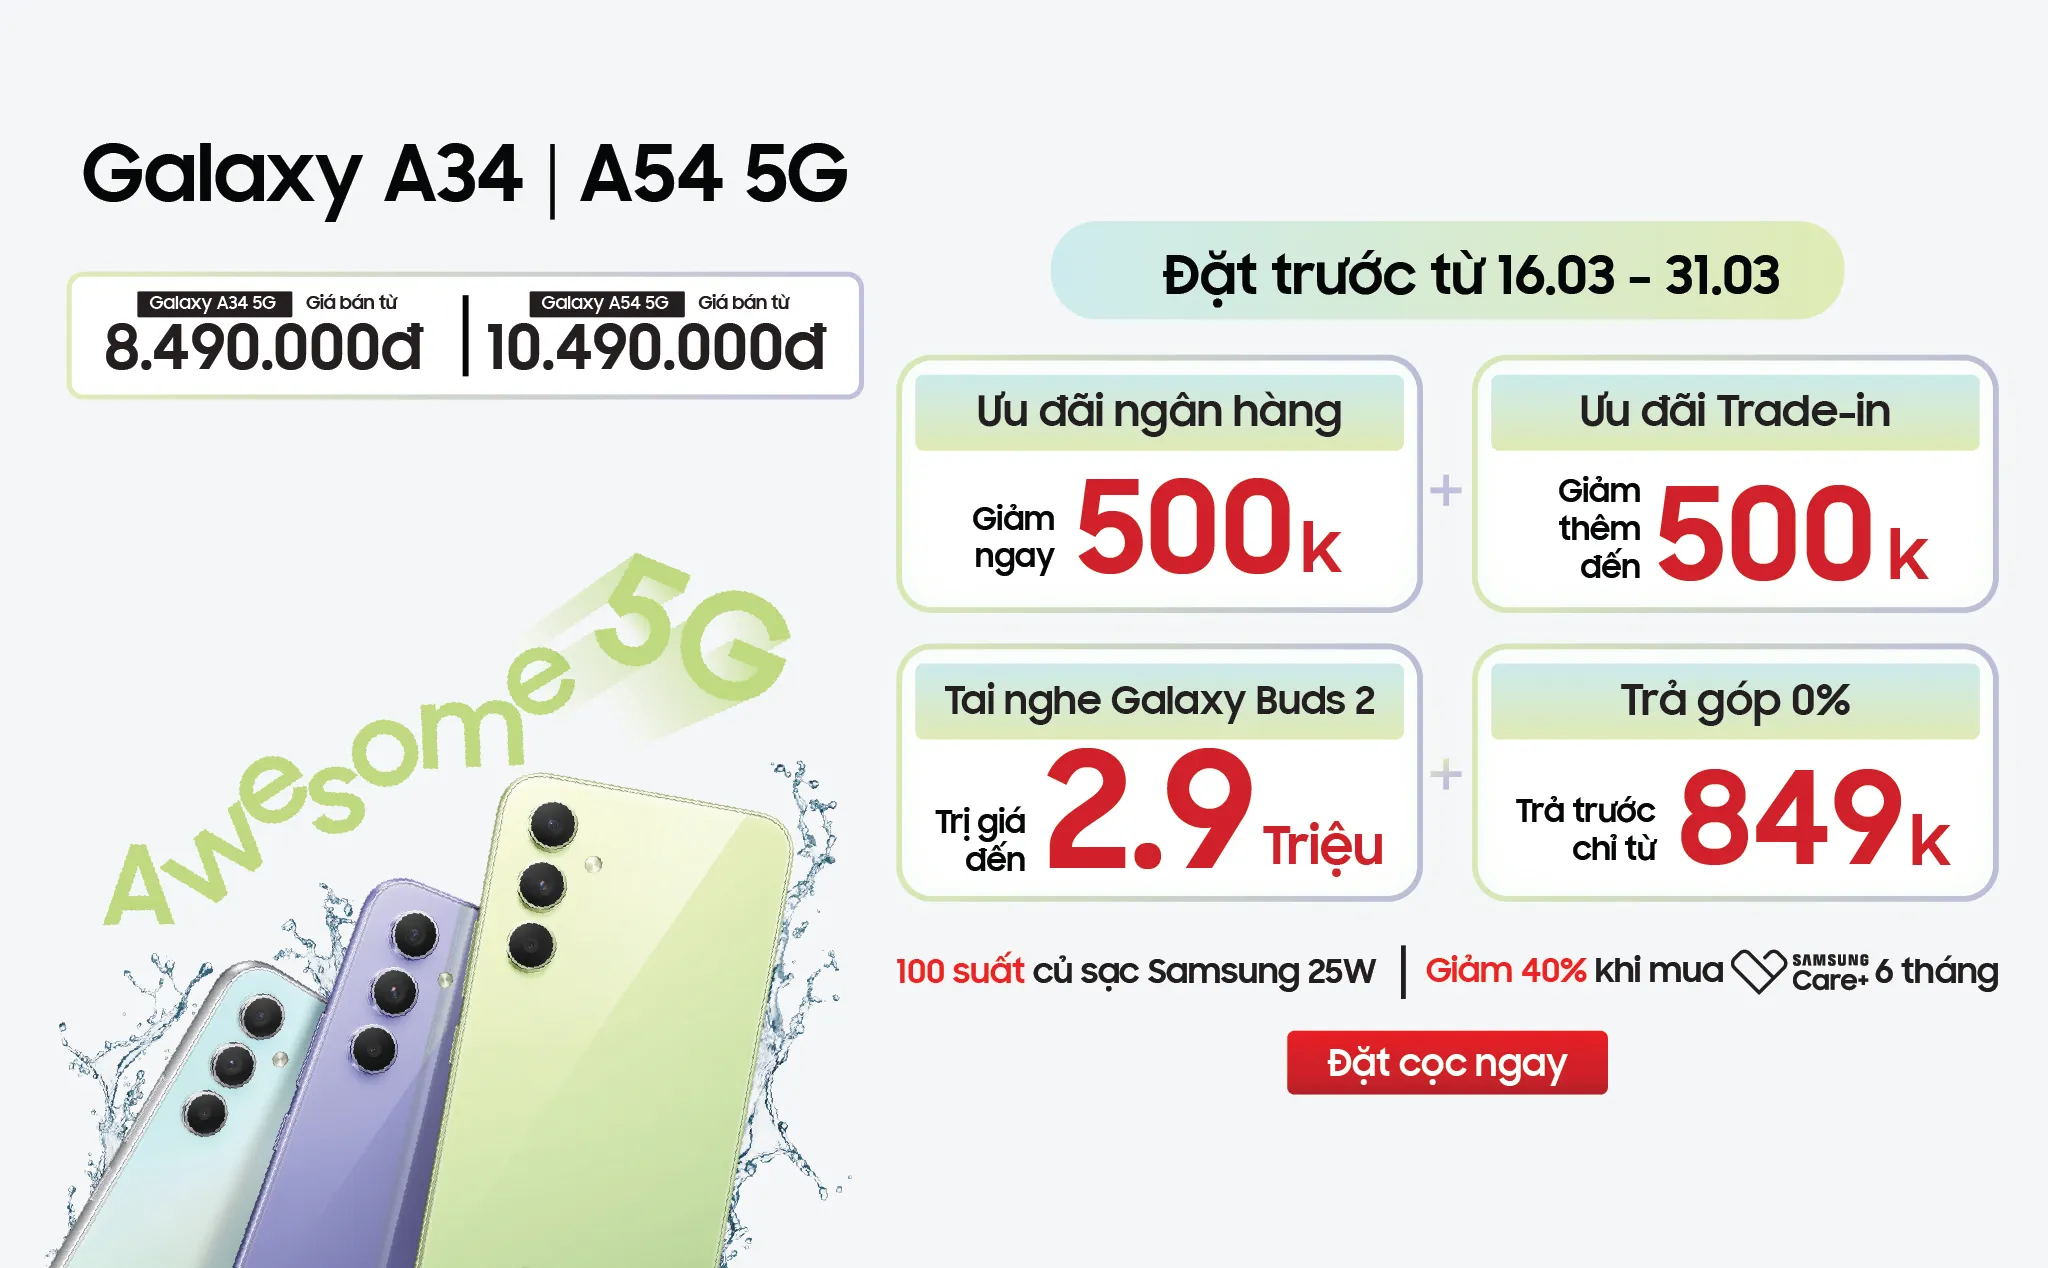 Di Động Việt nhận đặt trước Galaxy A34 và Galaxy A54 5G từ 8.49 triệu đồng, kèm ưu đãi hơn 4 triệu đồng